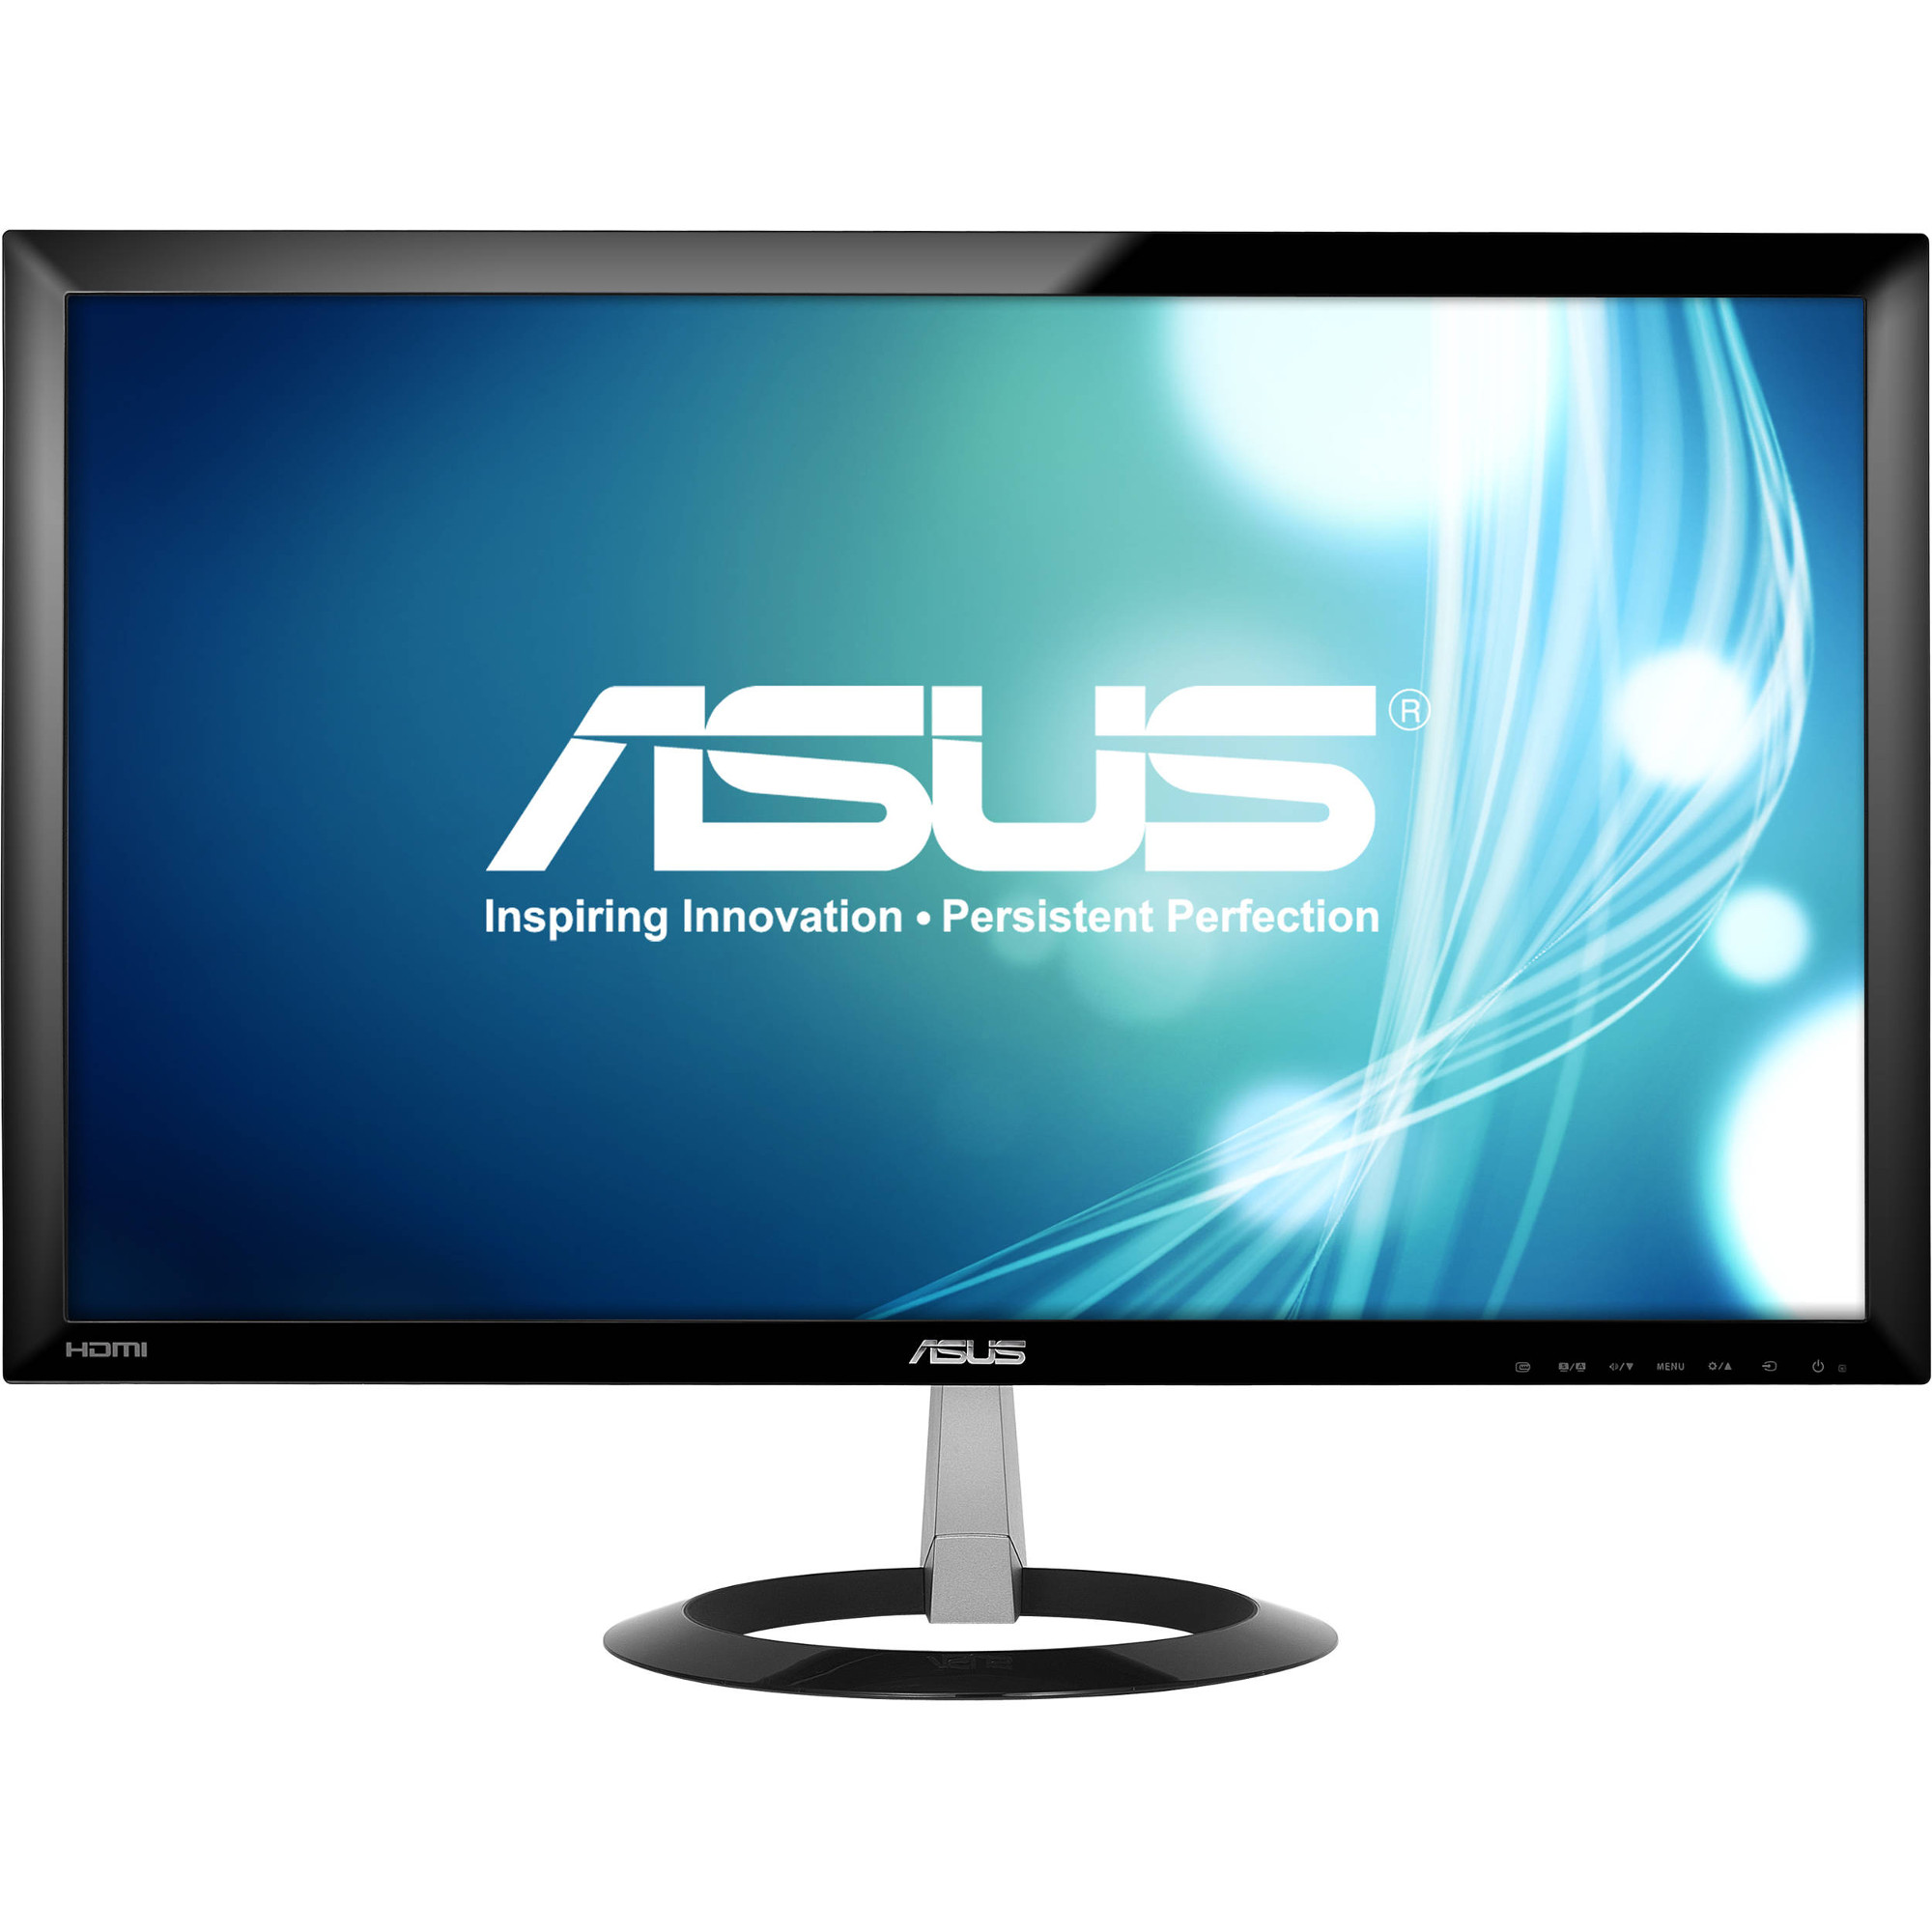  Monitor LED Asus VX238H, 23", Full HD, Negru 